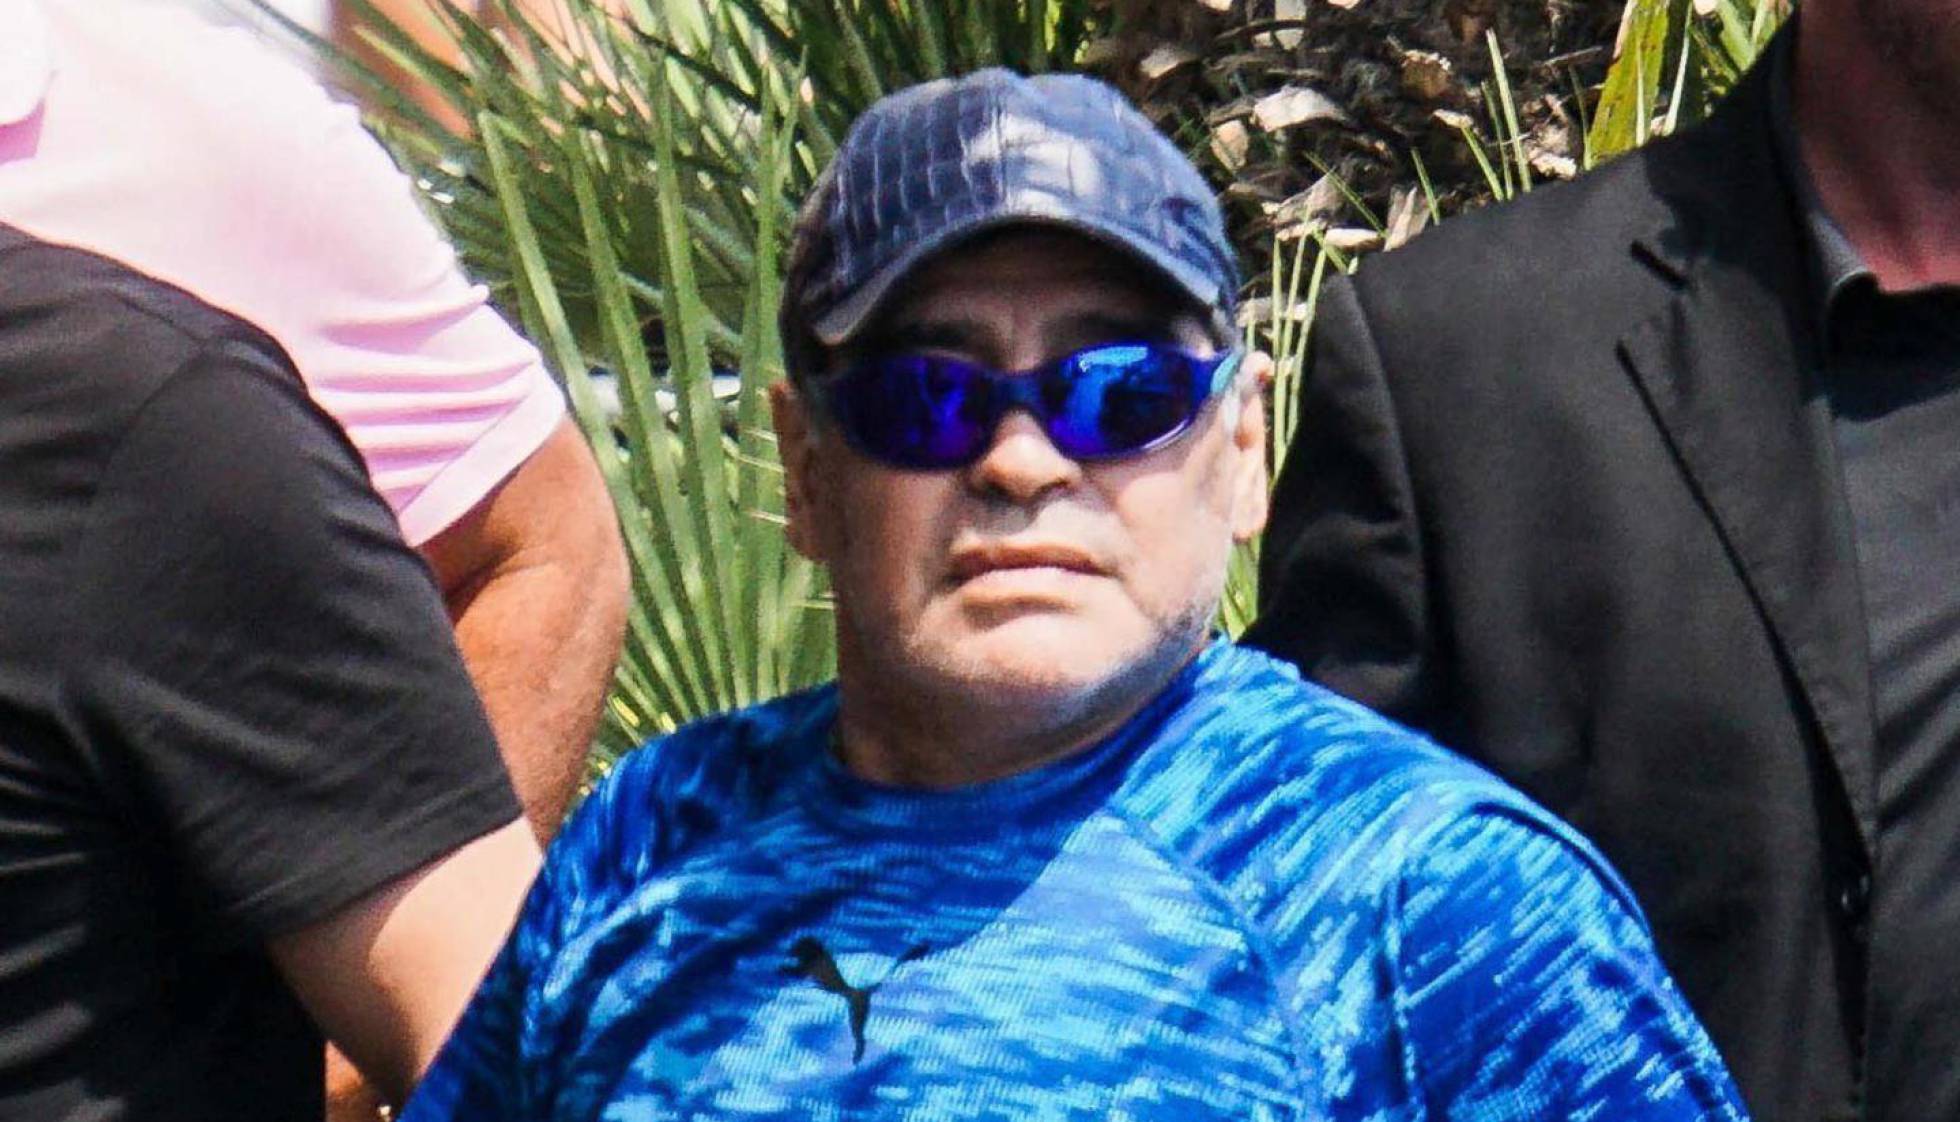 El País: Guerra Maradona-Kempes… ¿quién apoya dictaduras?